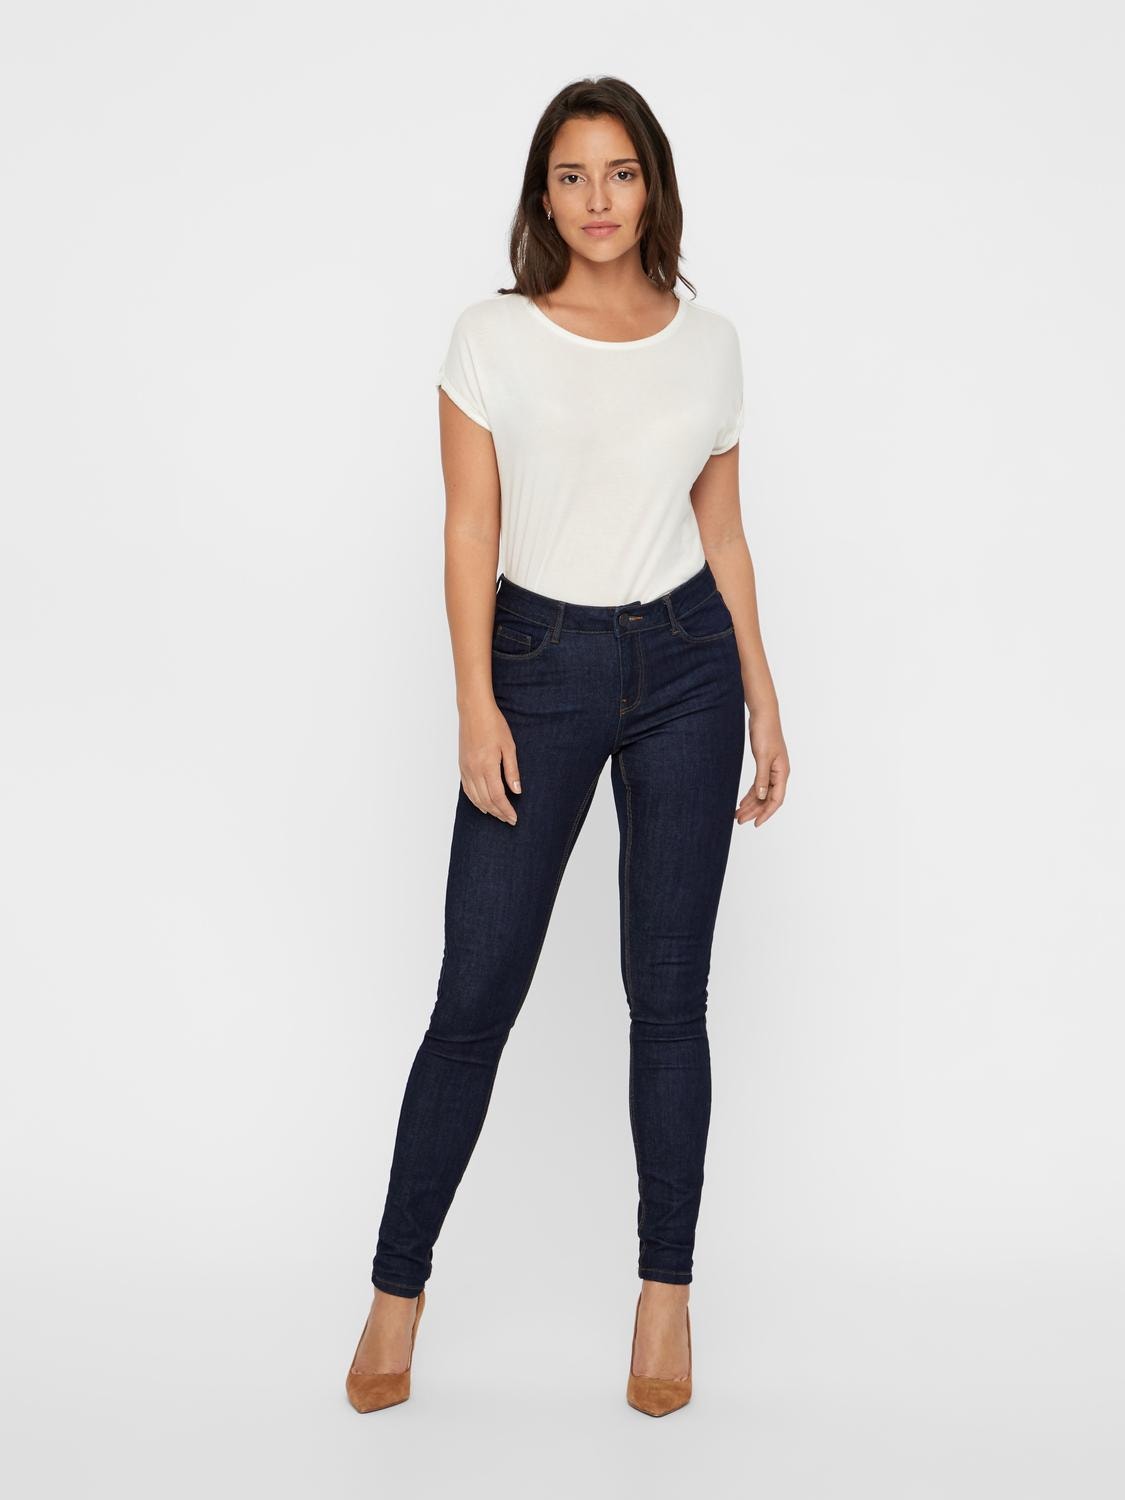 Vero Moda VMSEVEN Slim Fit Jeans -Dark Blue Denim - 10183948